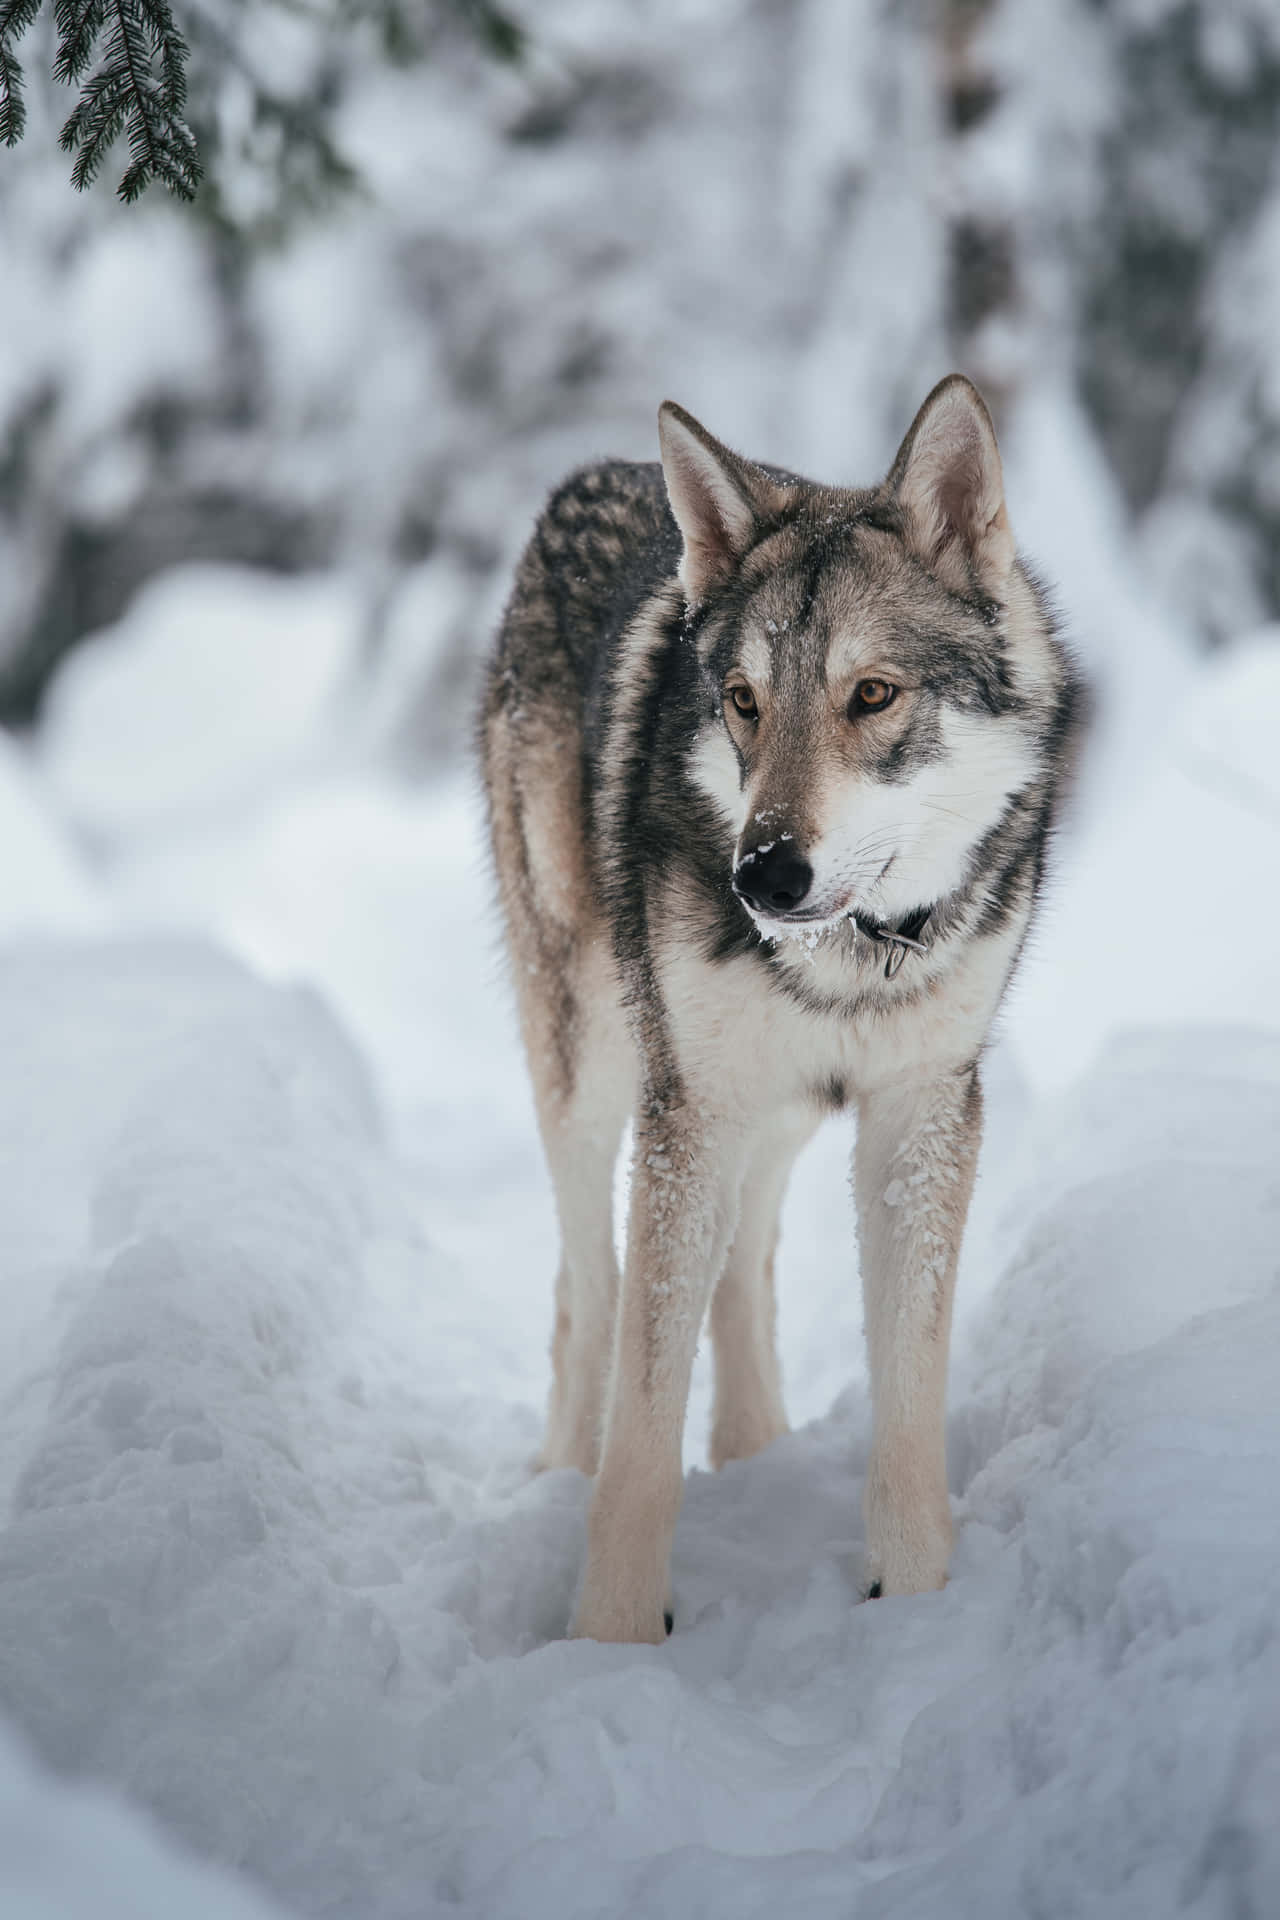 Majestic Wolf in a Snowy Winter Landscape Wallpaper